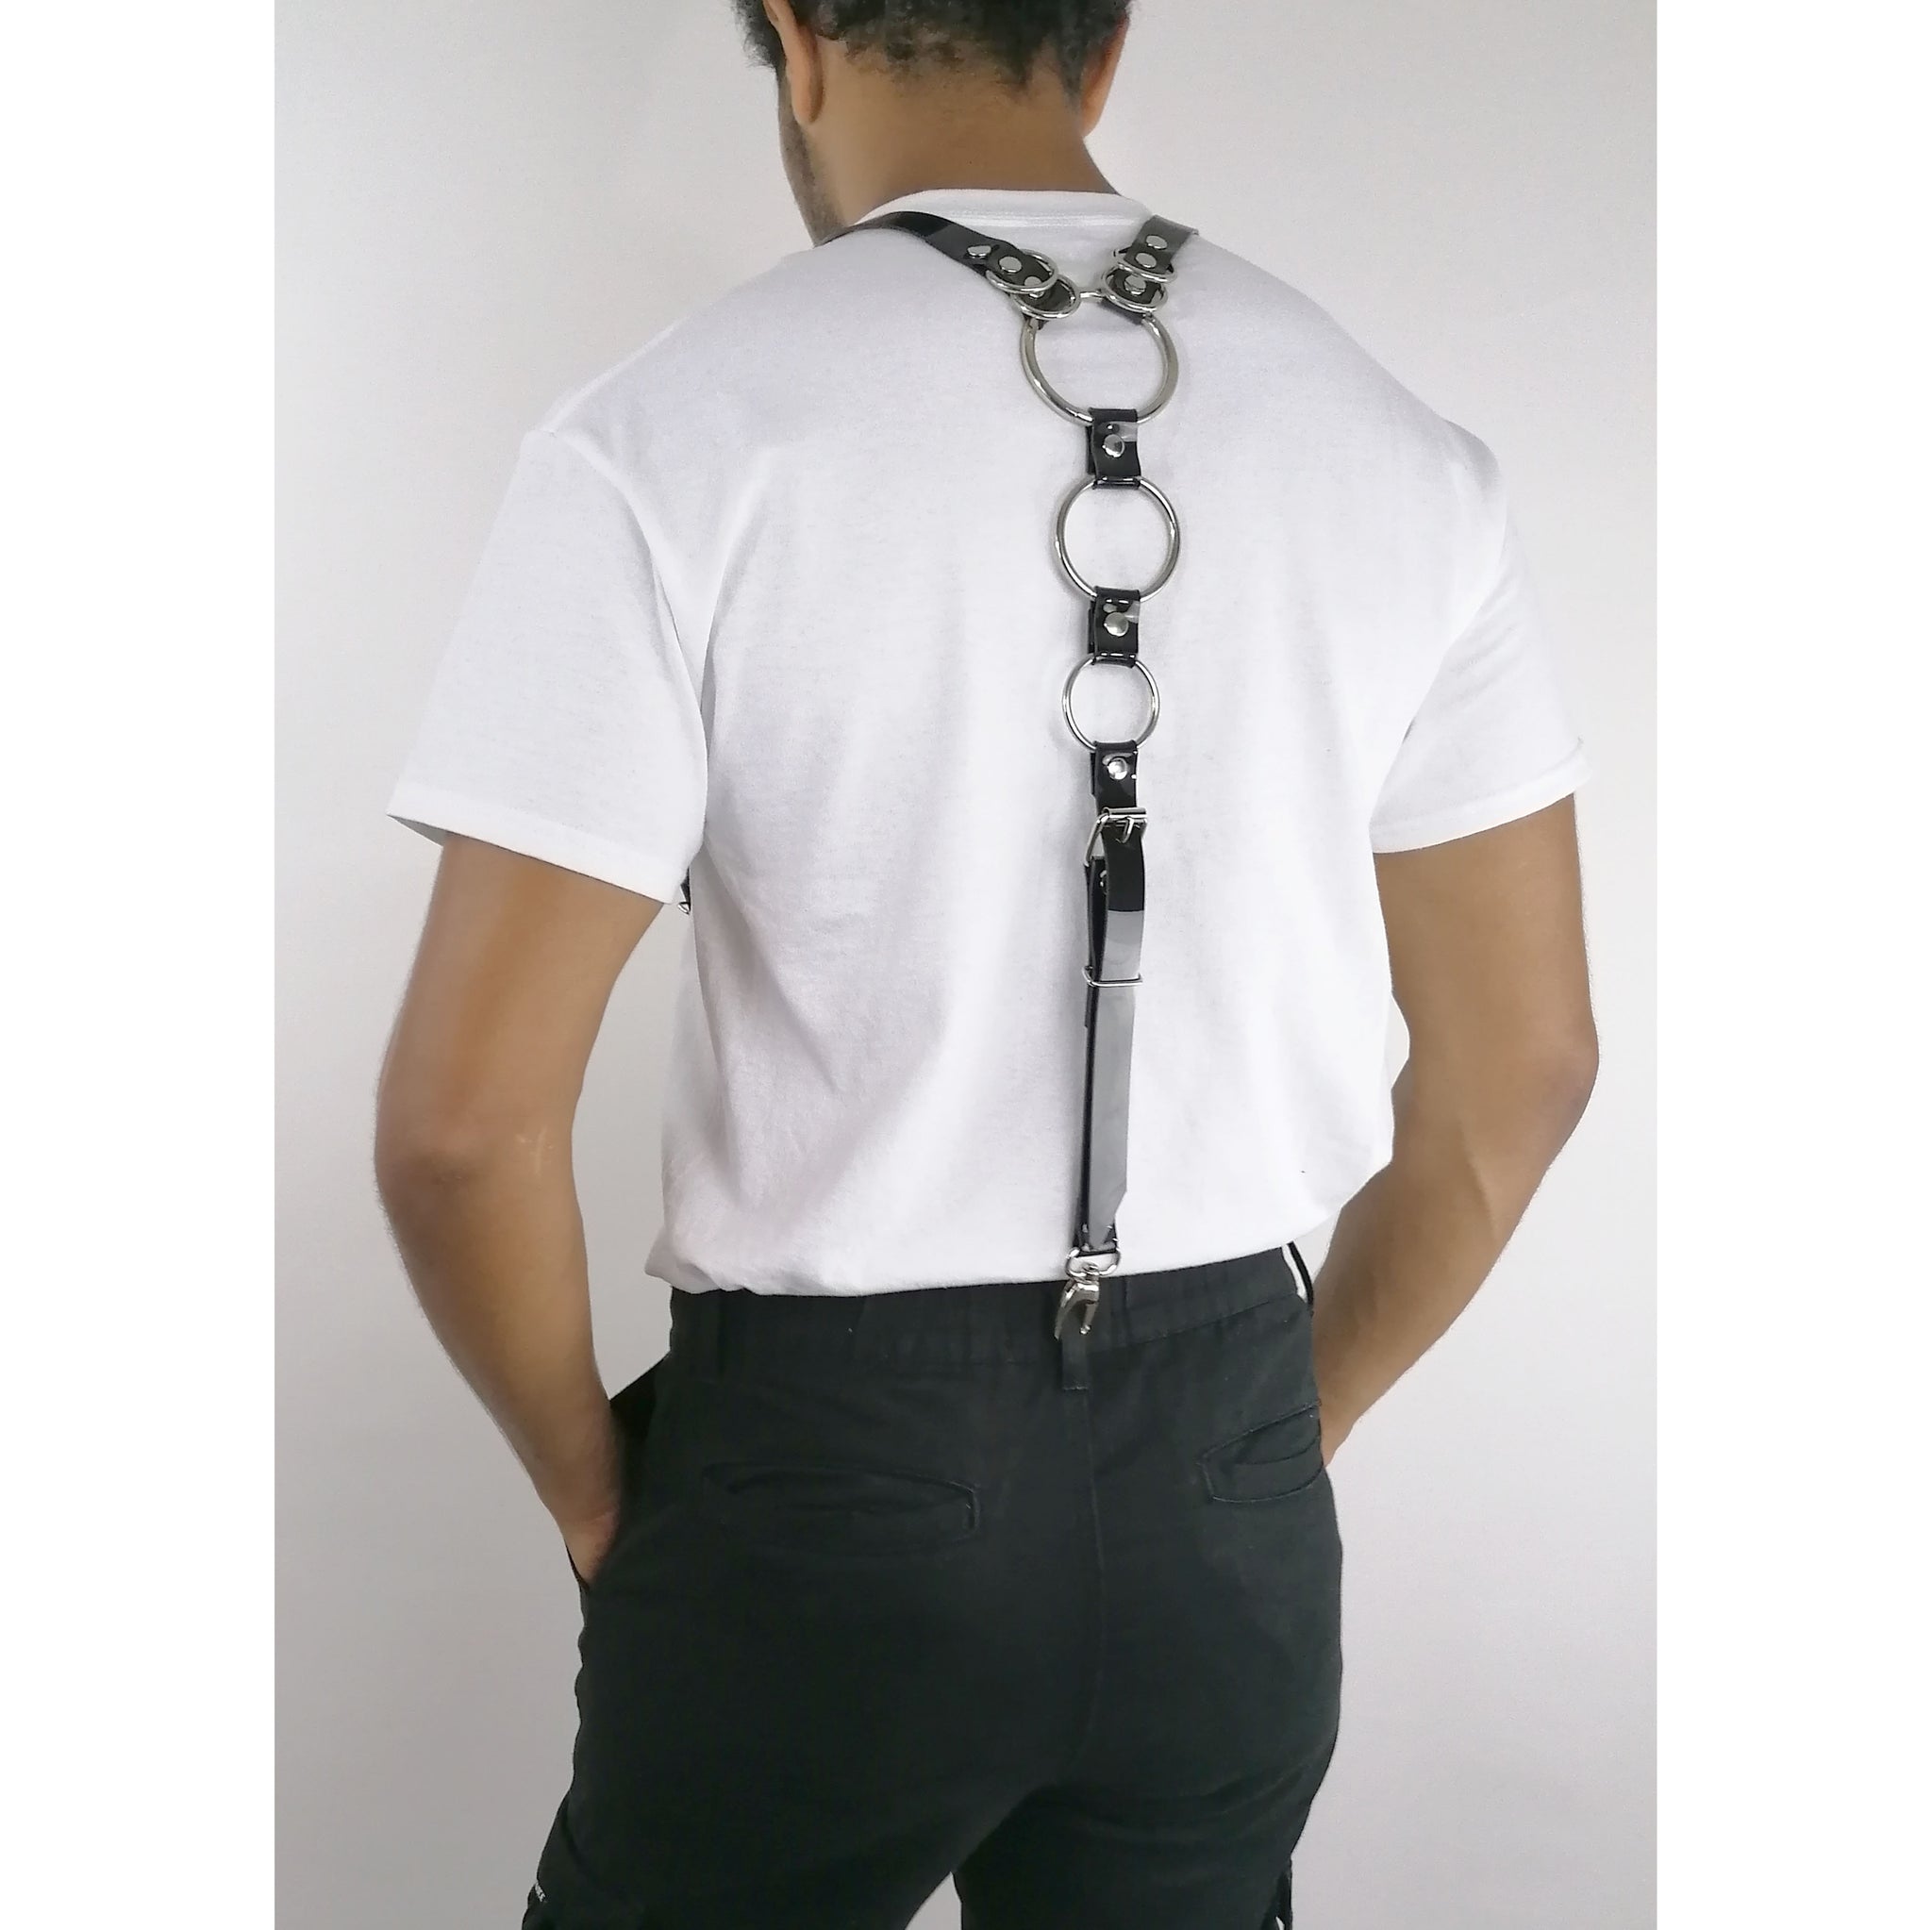 'FRANJO' PVC suspenders, black